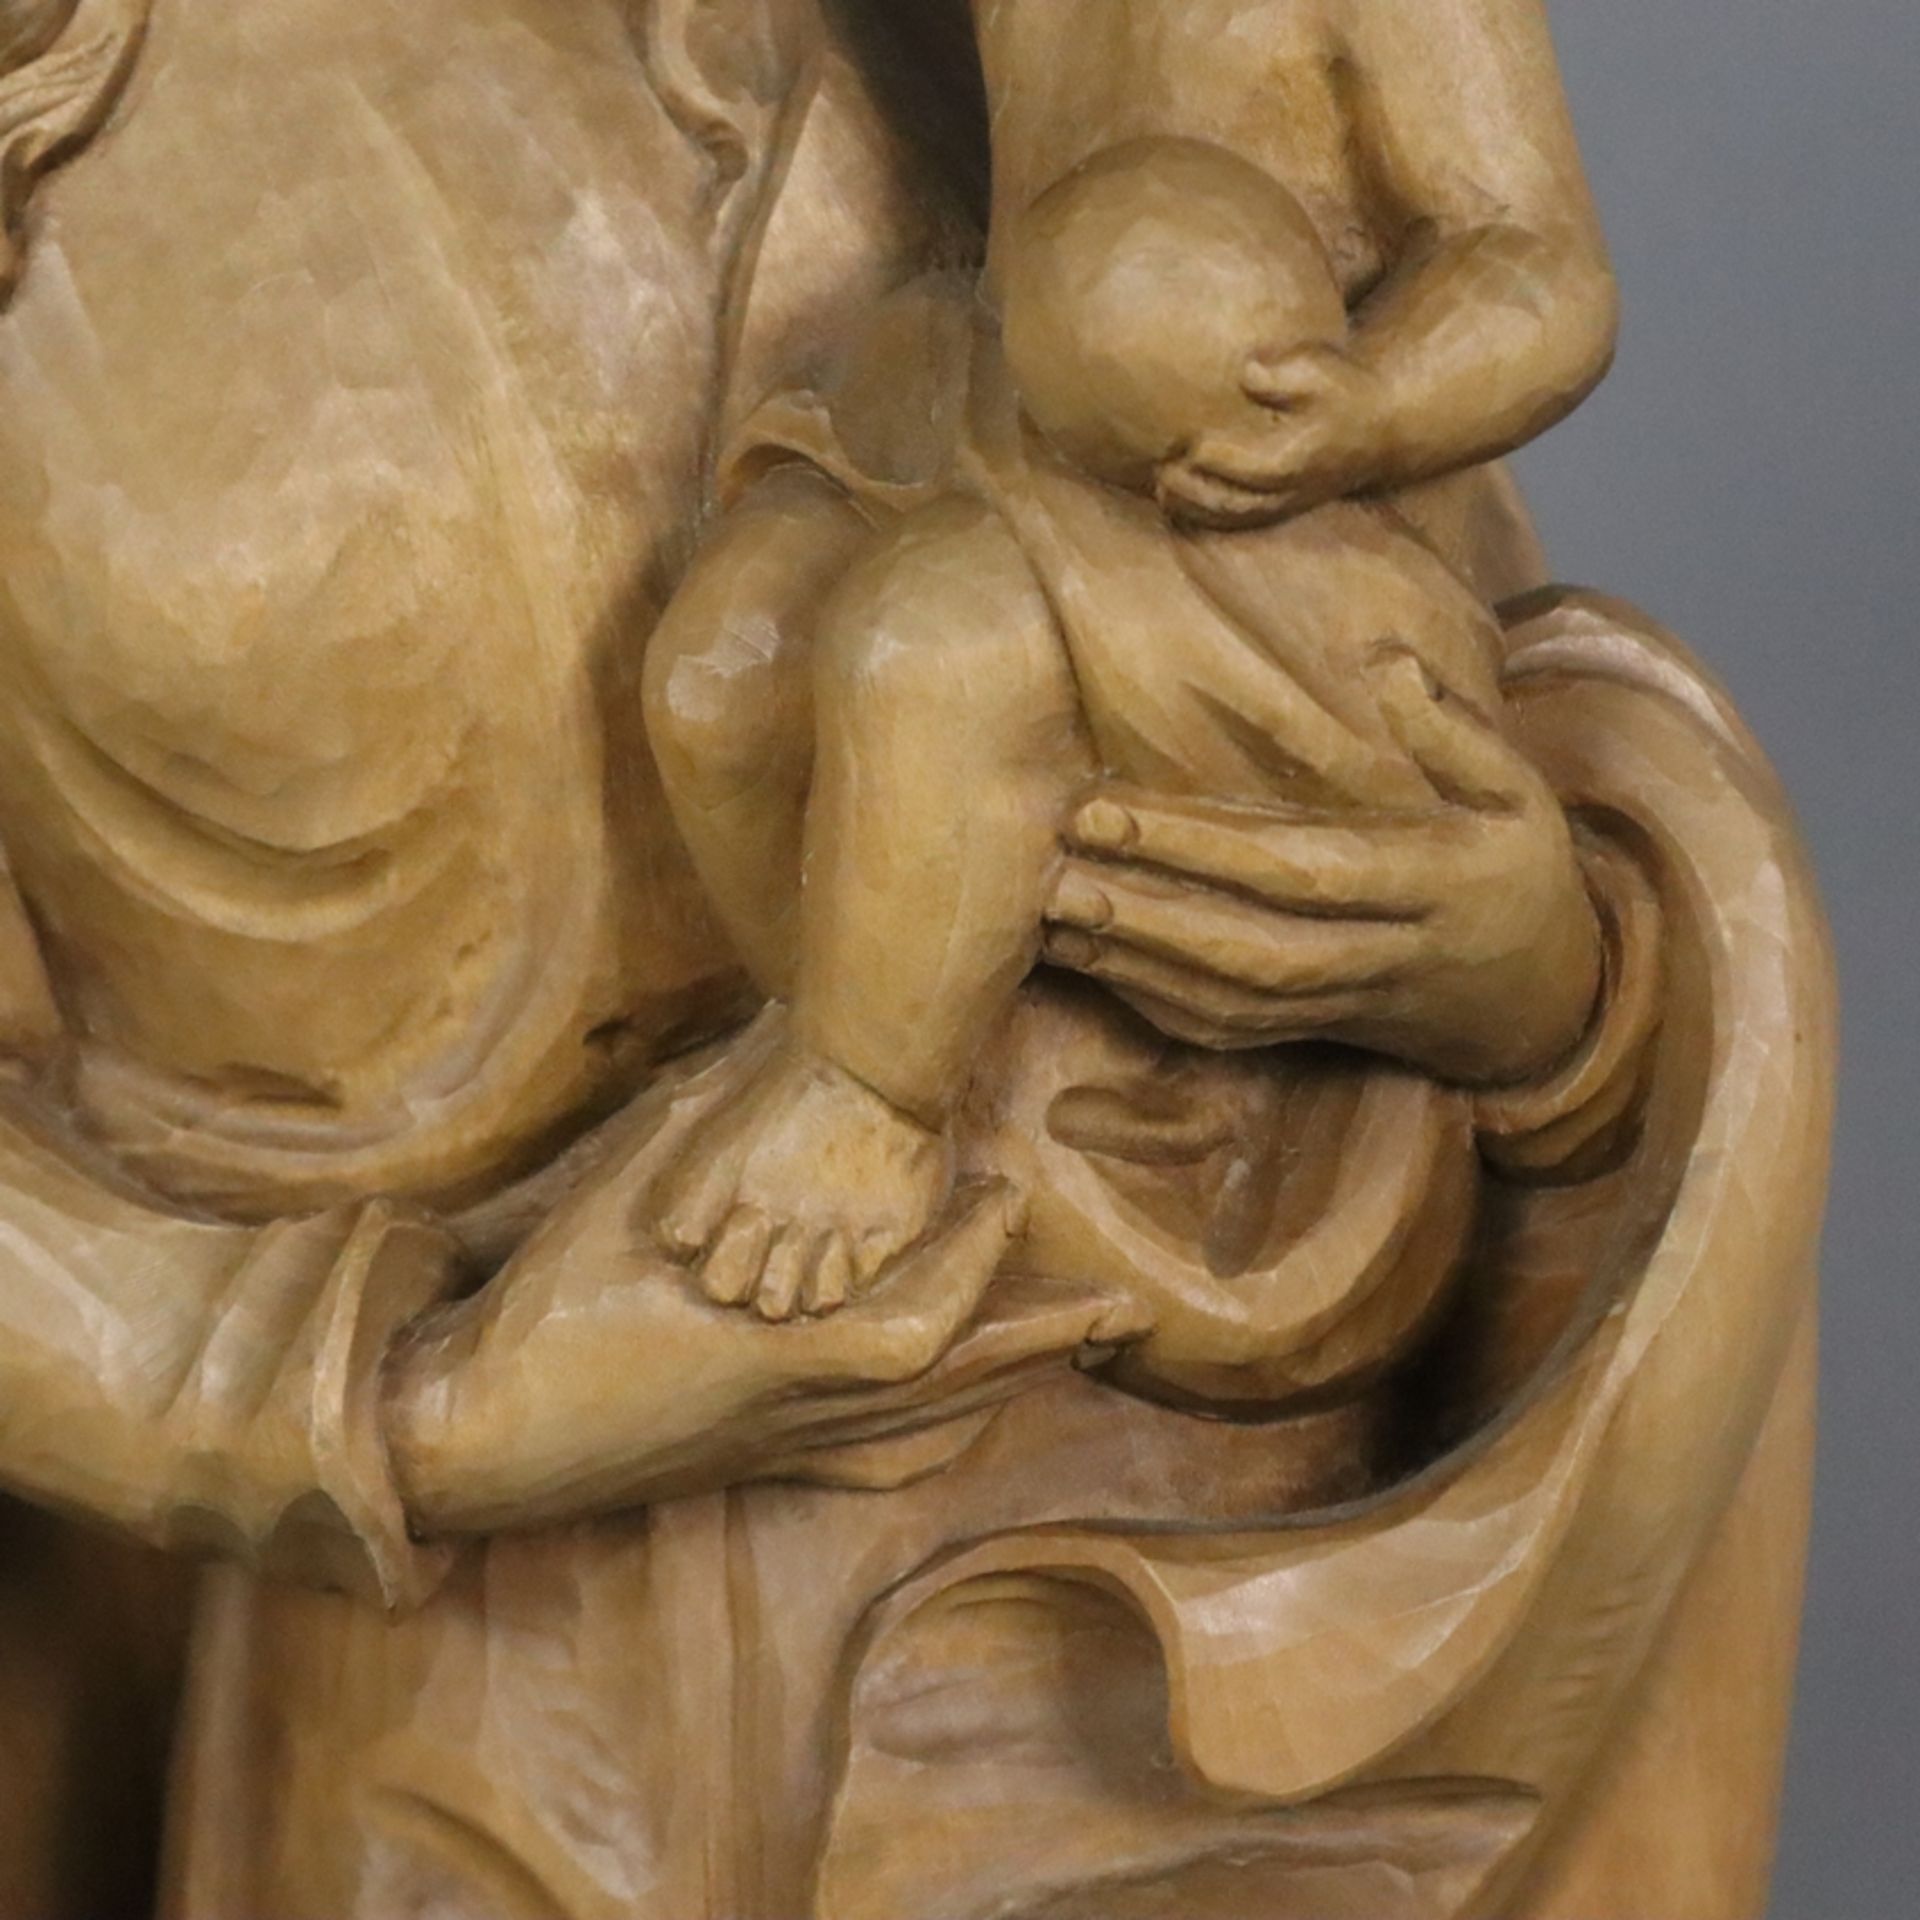 Holzfigur Madonna mit Kind - 20. Jahrhundert, Lindenholz, vollrund geschnitzt, Darstellung von Mari - Bild 5 aus 8